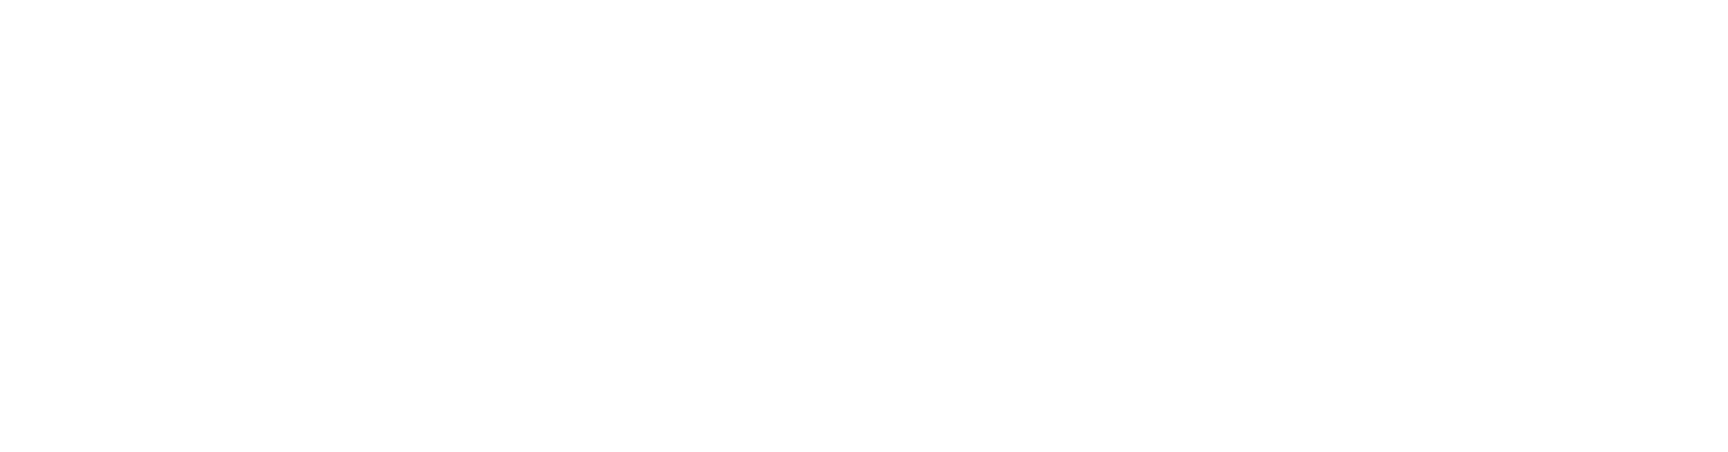 El Rancho de las Golondrinas logo main